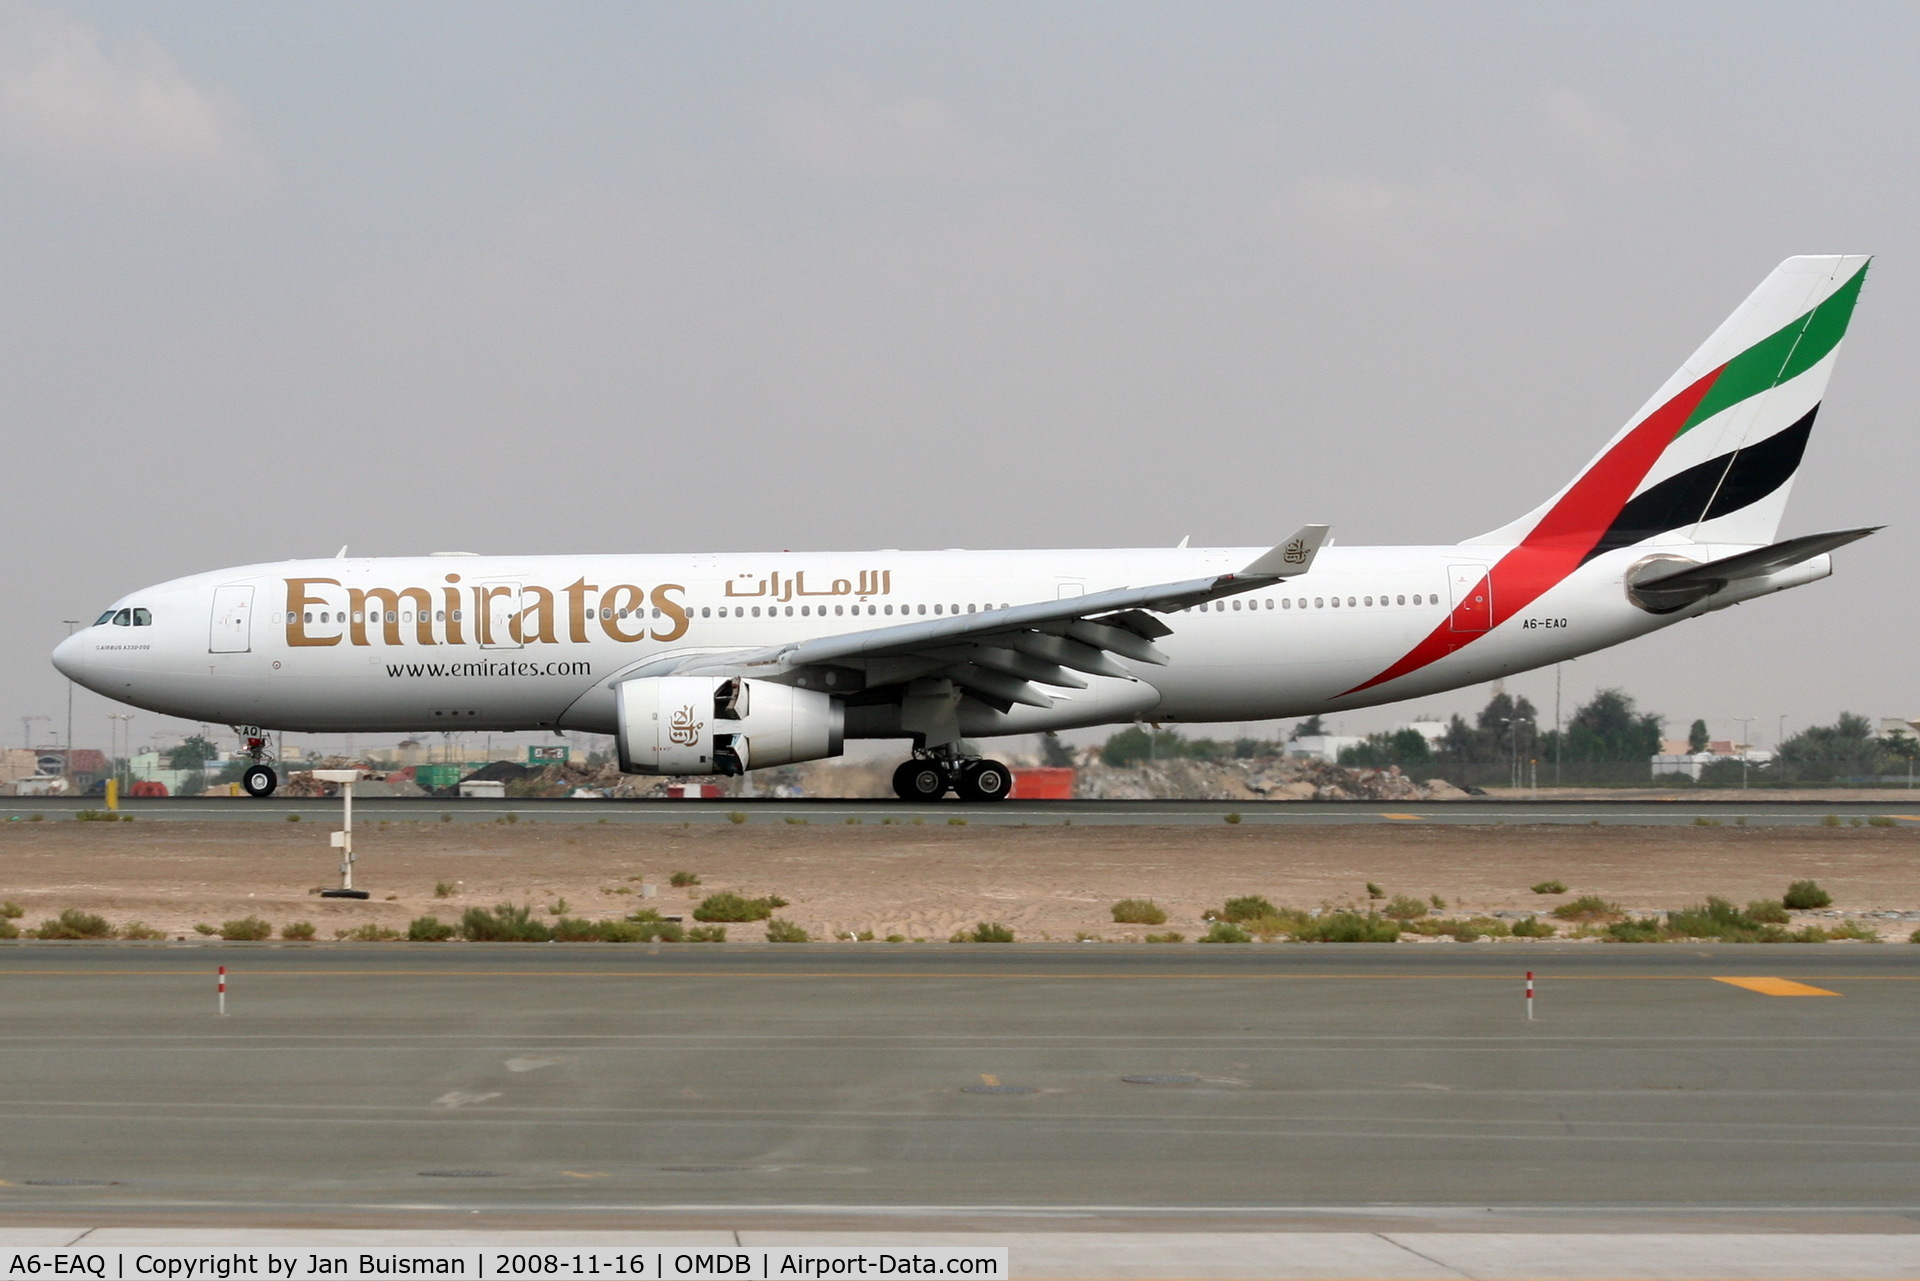 A6-EAQ, 2003 Airbus A330-243 C/N 518, Emirates